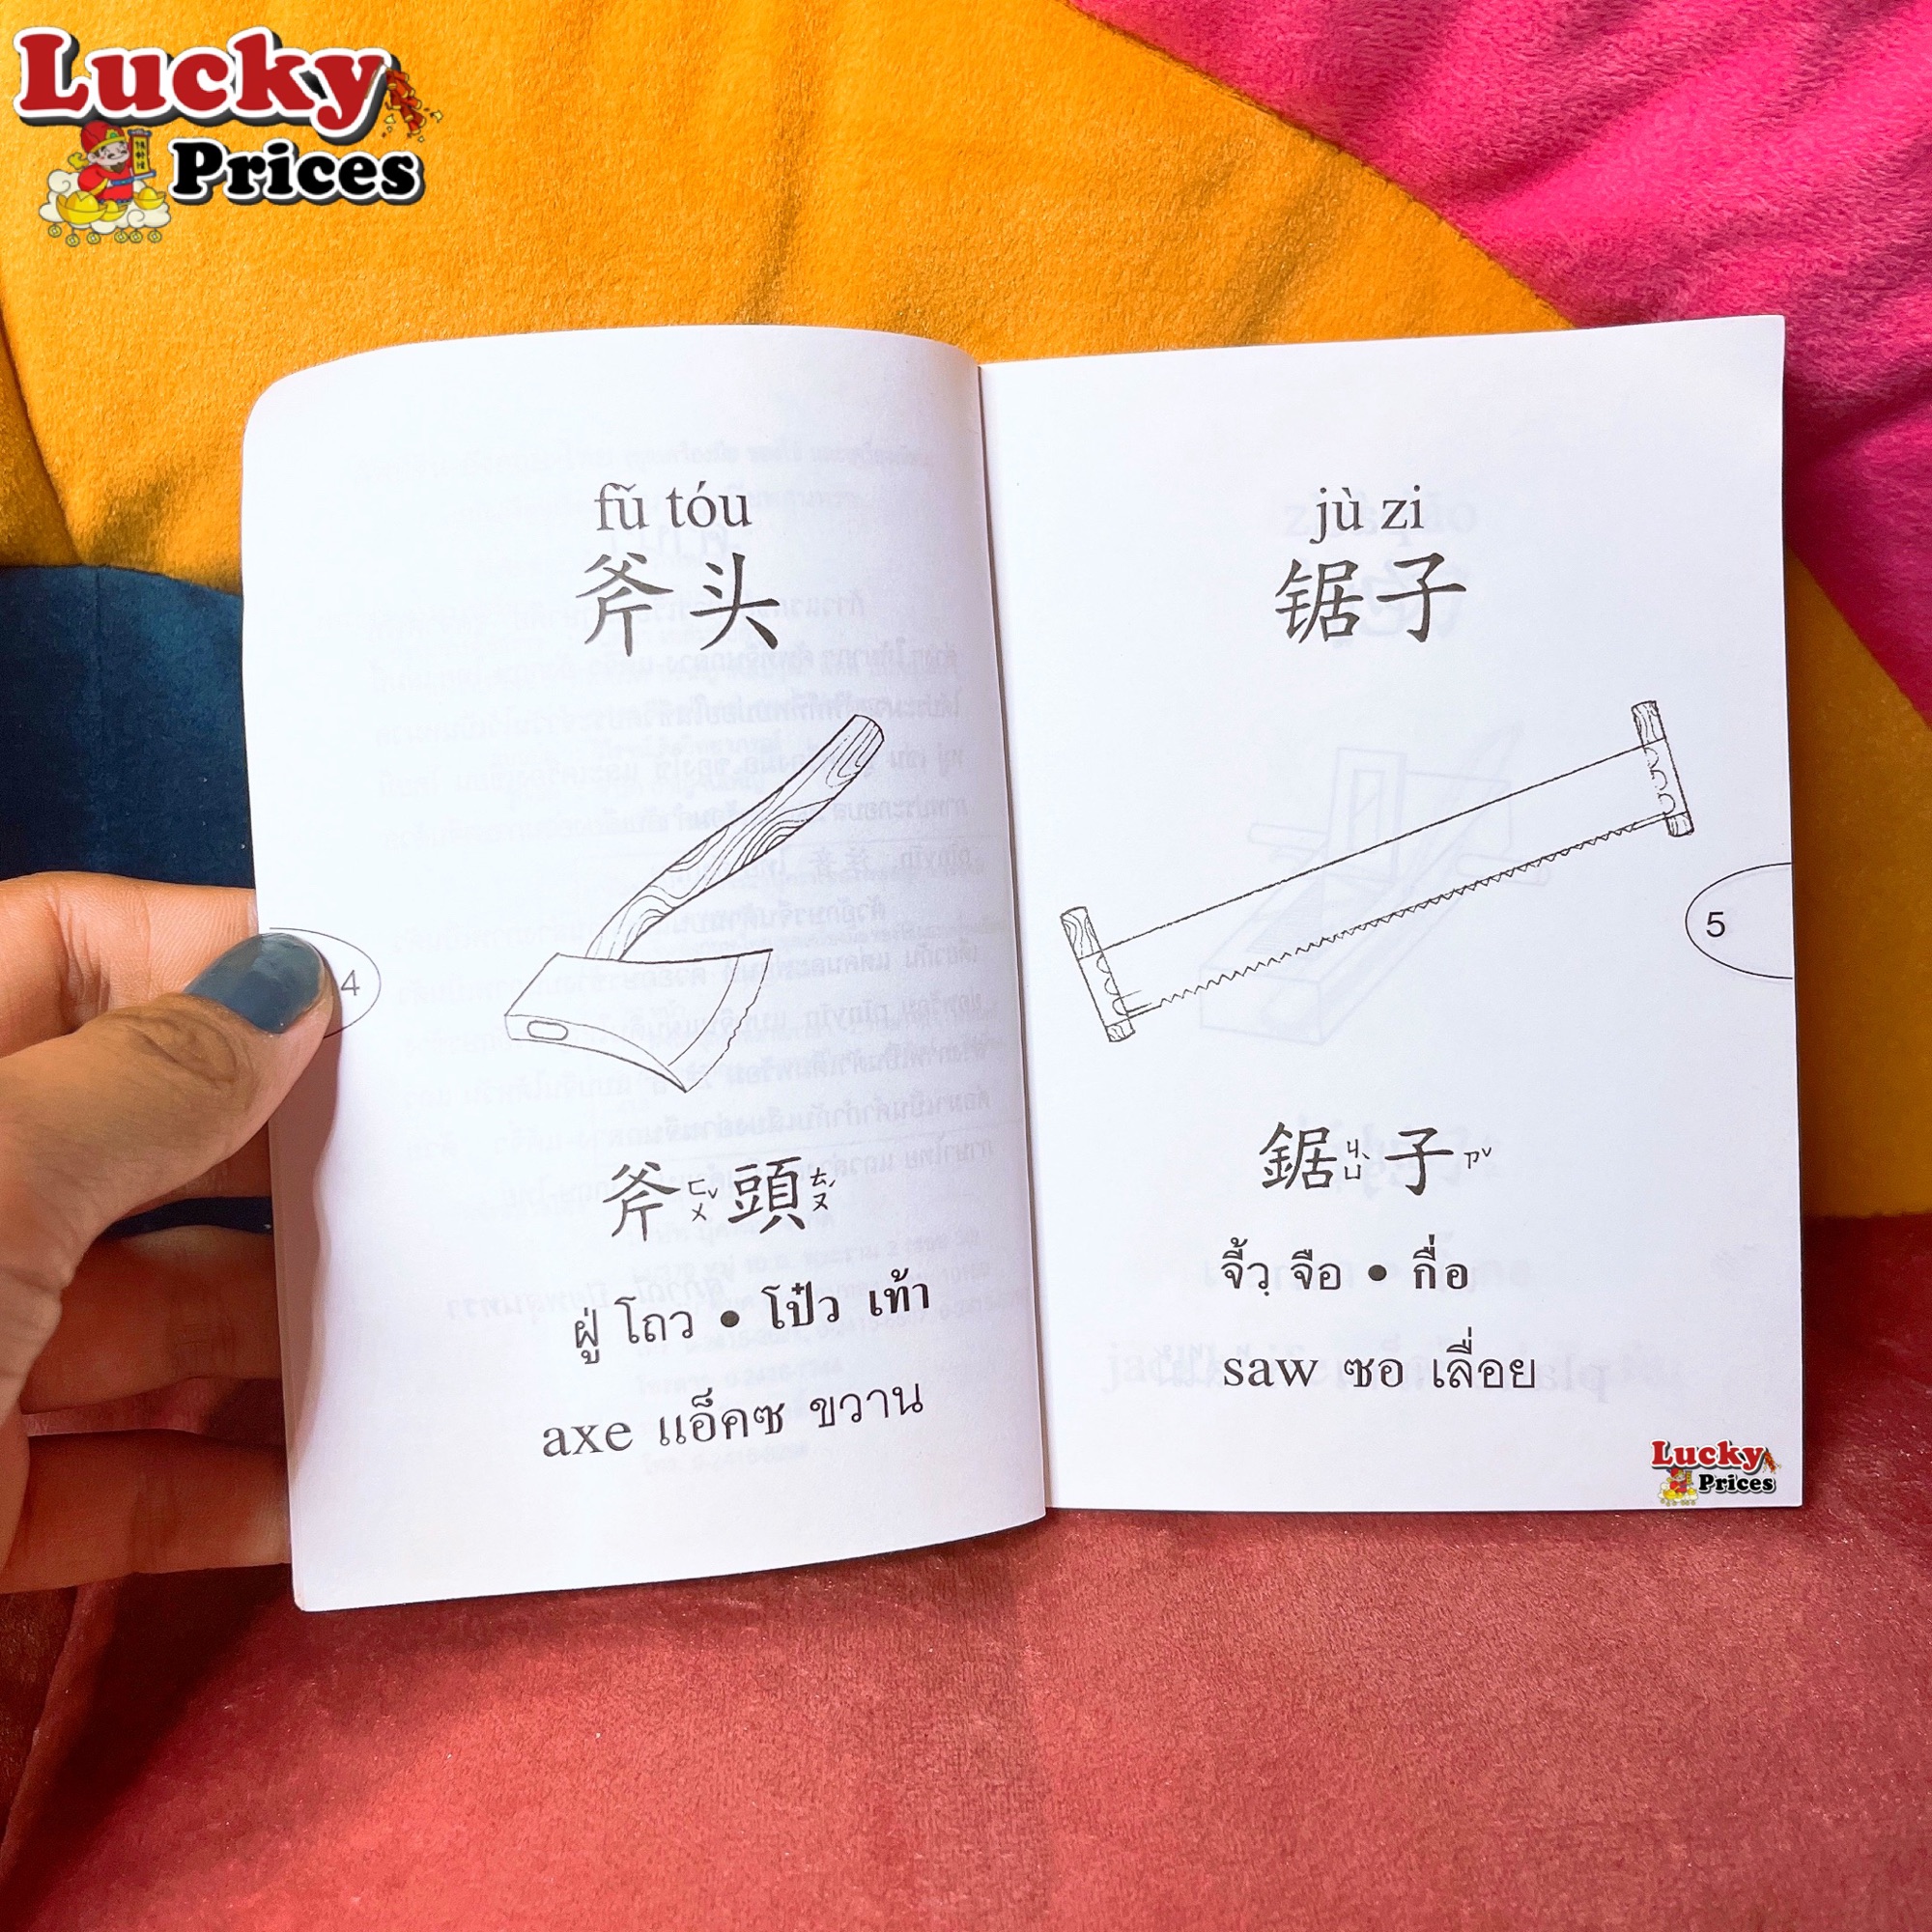 ศัพท์ จีน-อังกฤษ-ไทย ชุดเครื่องมือ,ของใช้และเครื่องเขียน (เล่มเล็ก) ✓สมุด ท่องศัพท์ พินอิน คัดจีน หัดเขียนจีน คำศัพท์จีน Hsk เรียนจีน ภาษาจีนพื้นฐาน  ติวจีน เหล่าซือ - Lucky Book Lucky Price - Thaipick